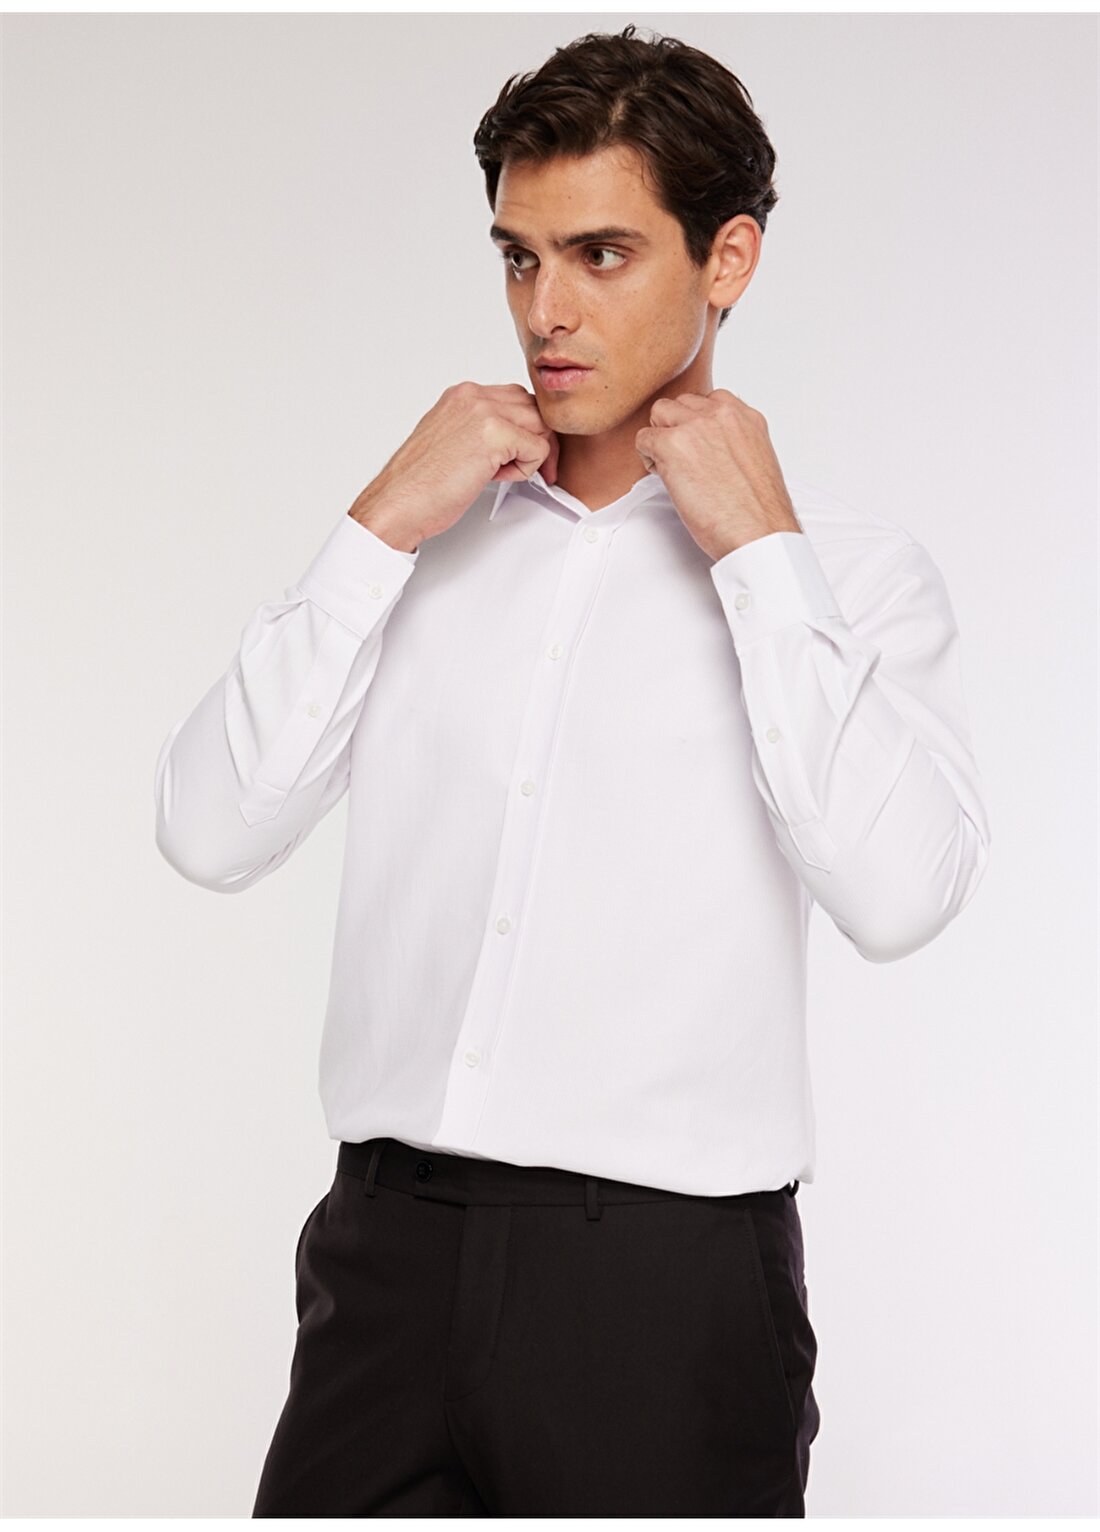 Fabrika Slim Fit Klasik Gömlek Yaka Armürlü Beyaz Erkek Gömlek MAYDOS 3 CEPSIZ KLASIK